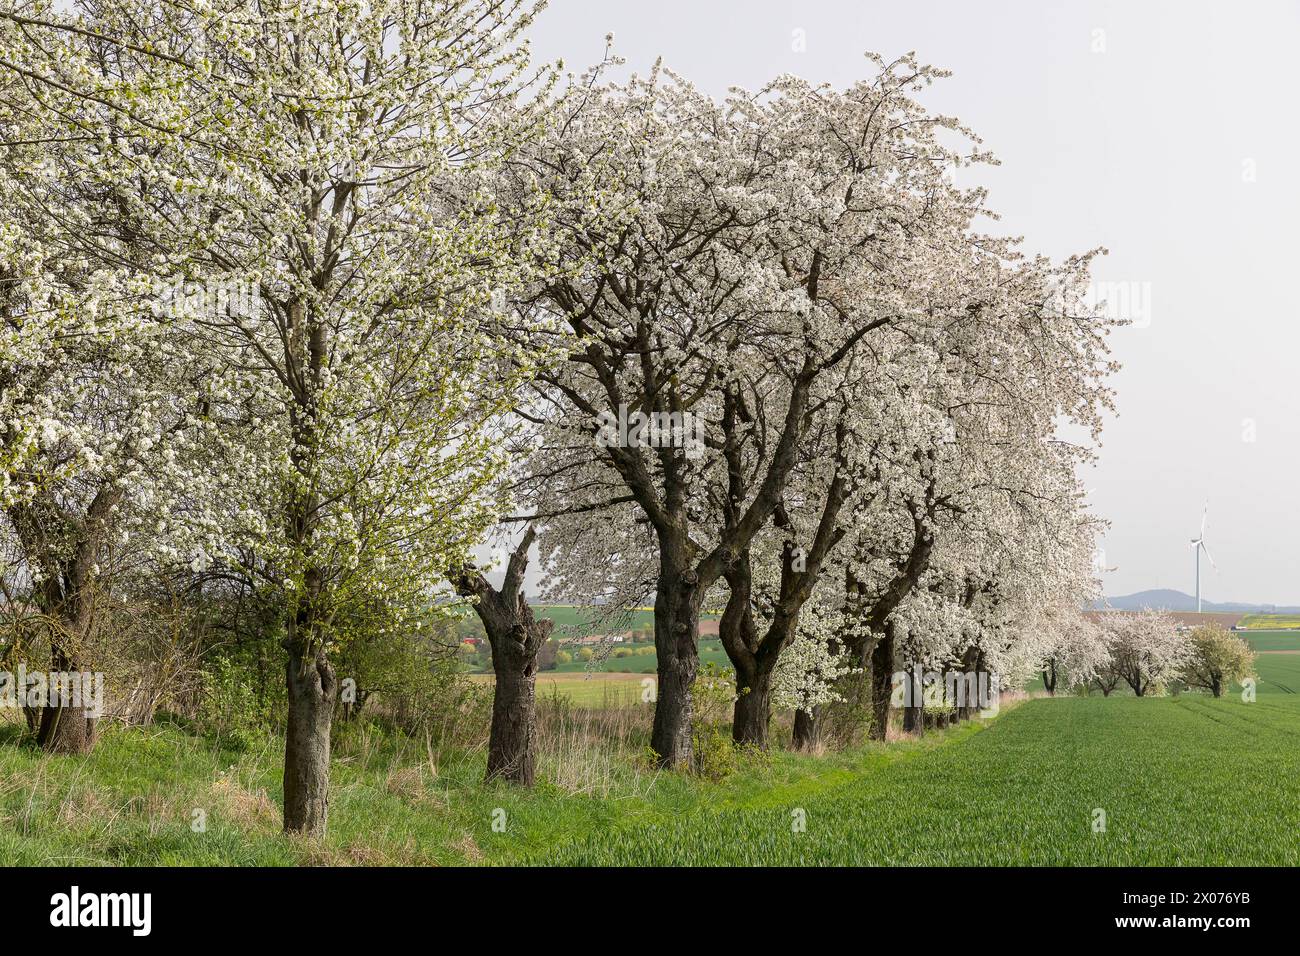 Obstbaumallee in Blüte, Wiesenweg mit blühenden Kirschbäumen prunus bei Zaschwitz, Grimma, Sachsen, Deutschland *** Fruit tree avenue in bloom, meadow Stock Photo